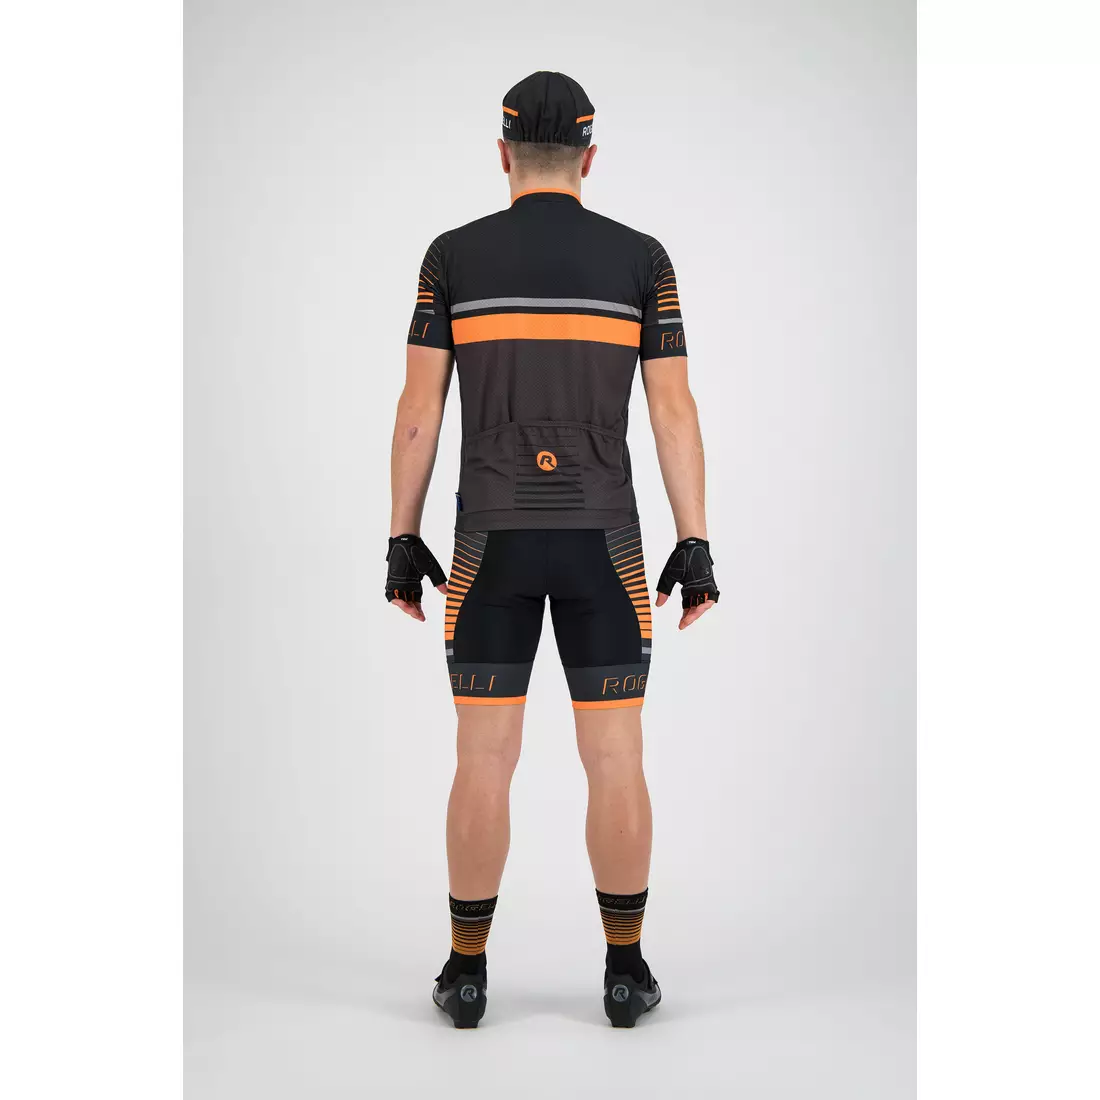 Rogelli HERO 001.264 Men bicycle t-shirt Grey/Black/Orange